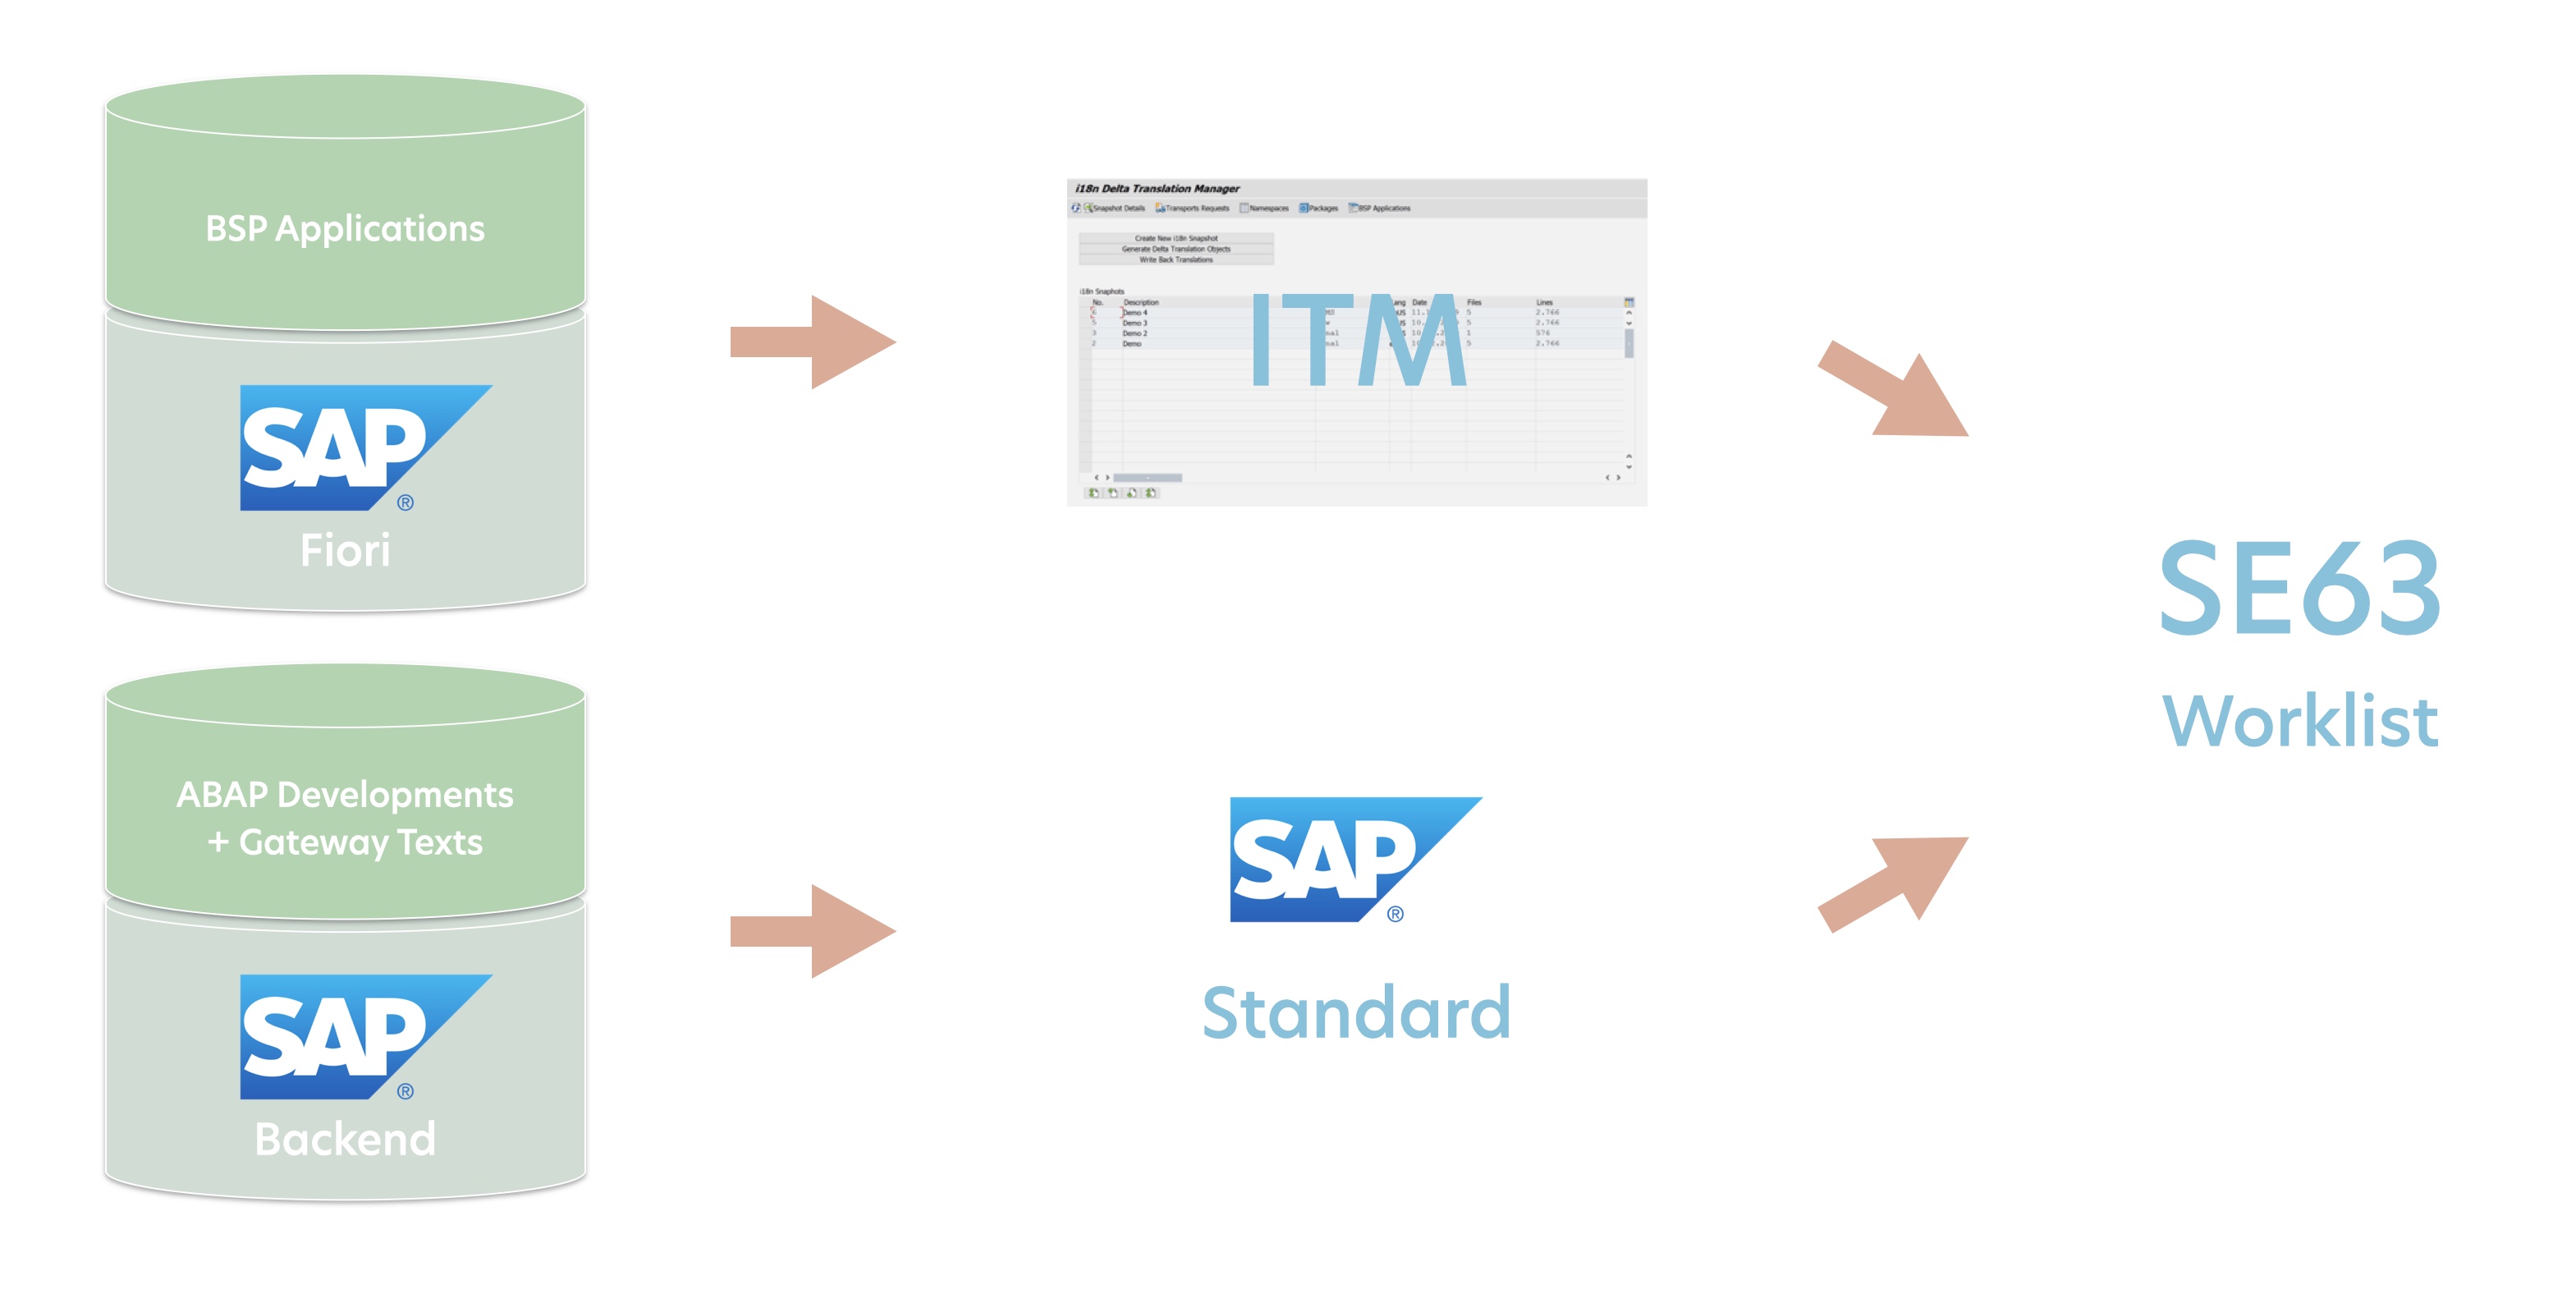 Mit i18n Translation Manager können Sie SAP-Fiori-Texte in SE63 übersetzen.